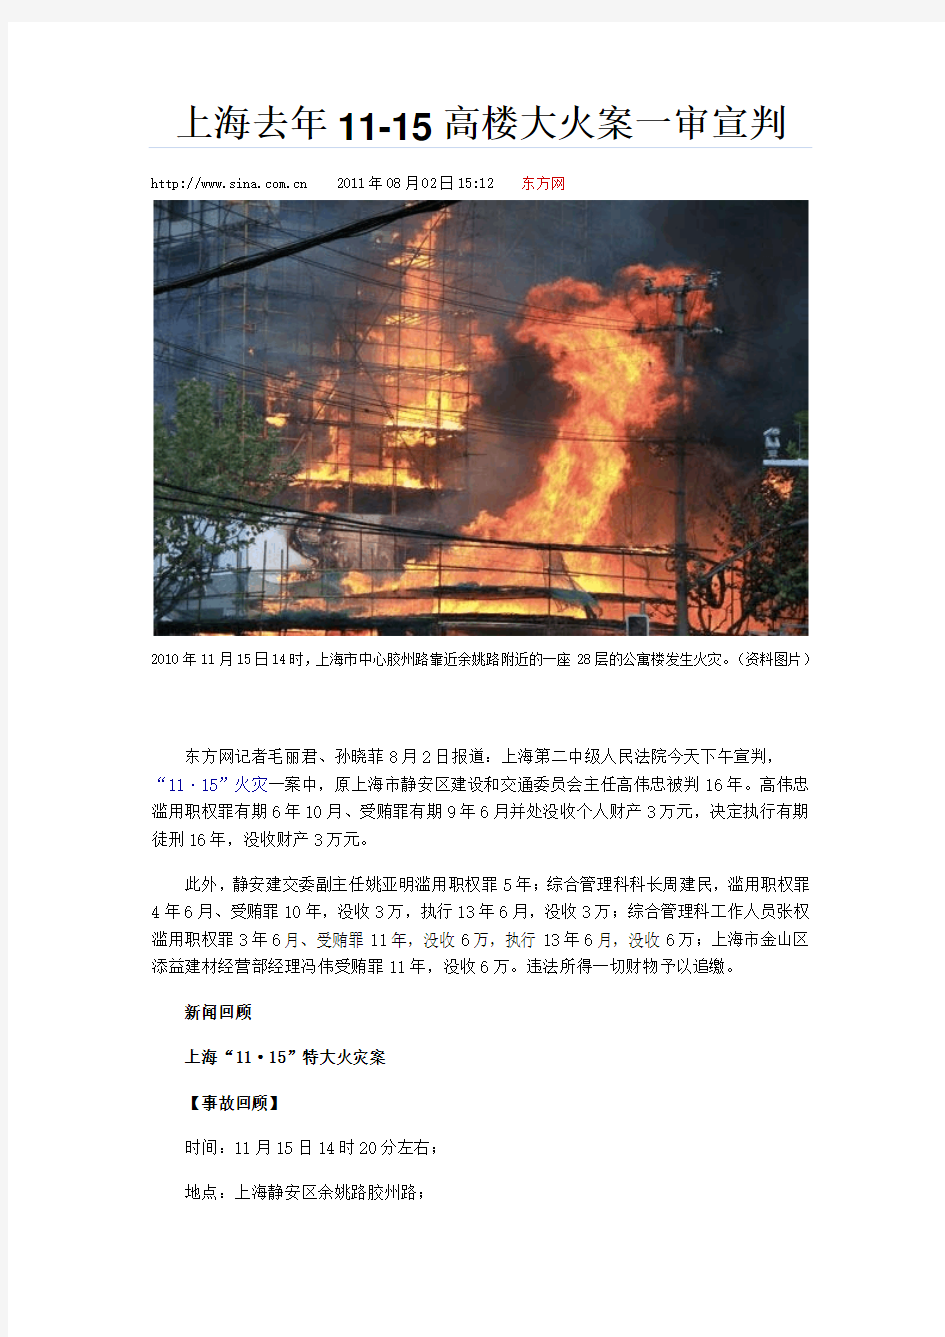 上海2010静安区火灾事件全程纪实